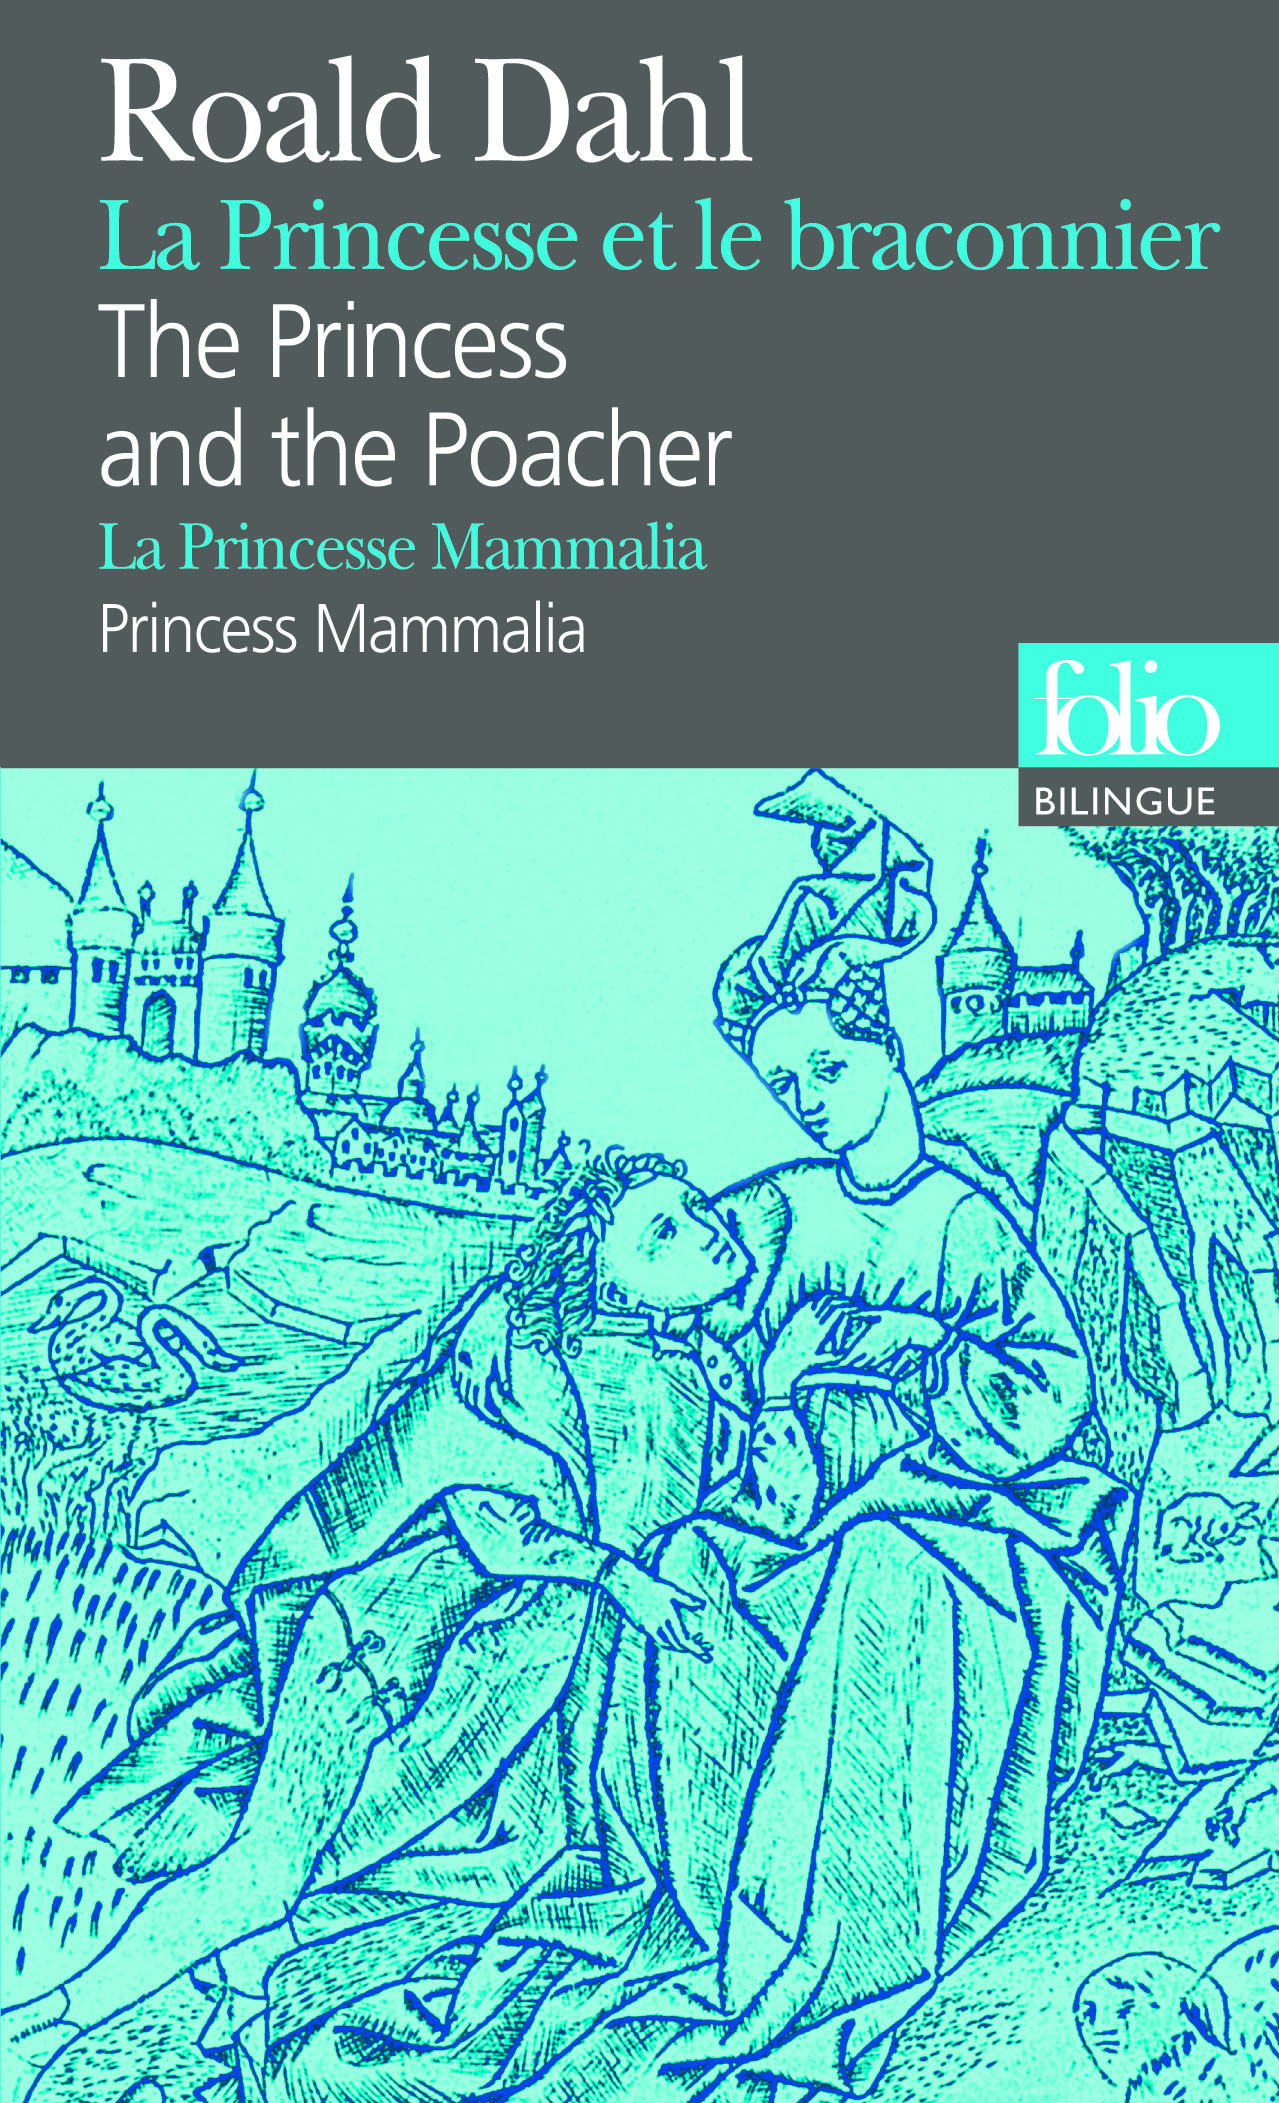 La Princesse et le braconnier/The Princess and the Poacher - La Princesse Mammalia/Princess Mammalia (9782070383160-front-cover)